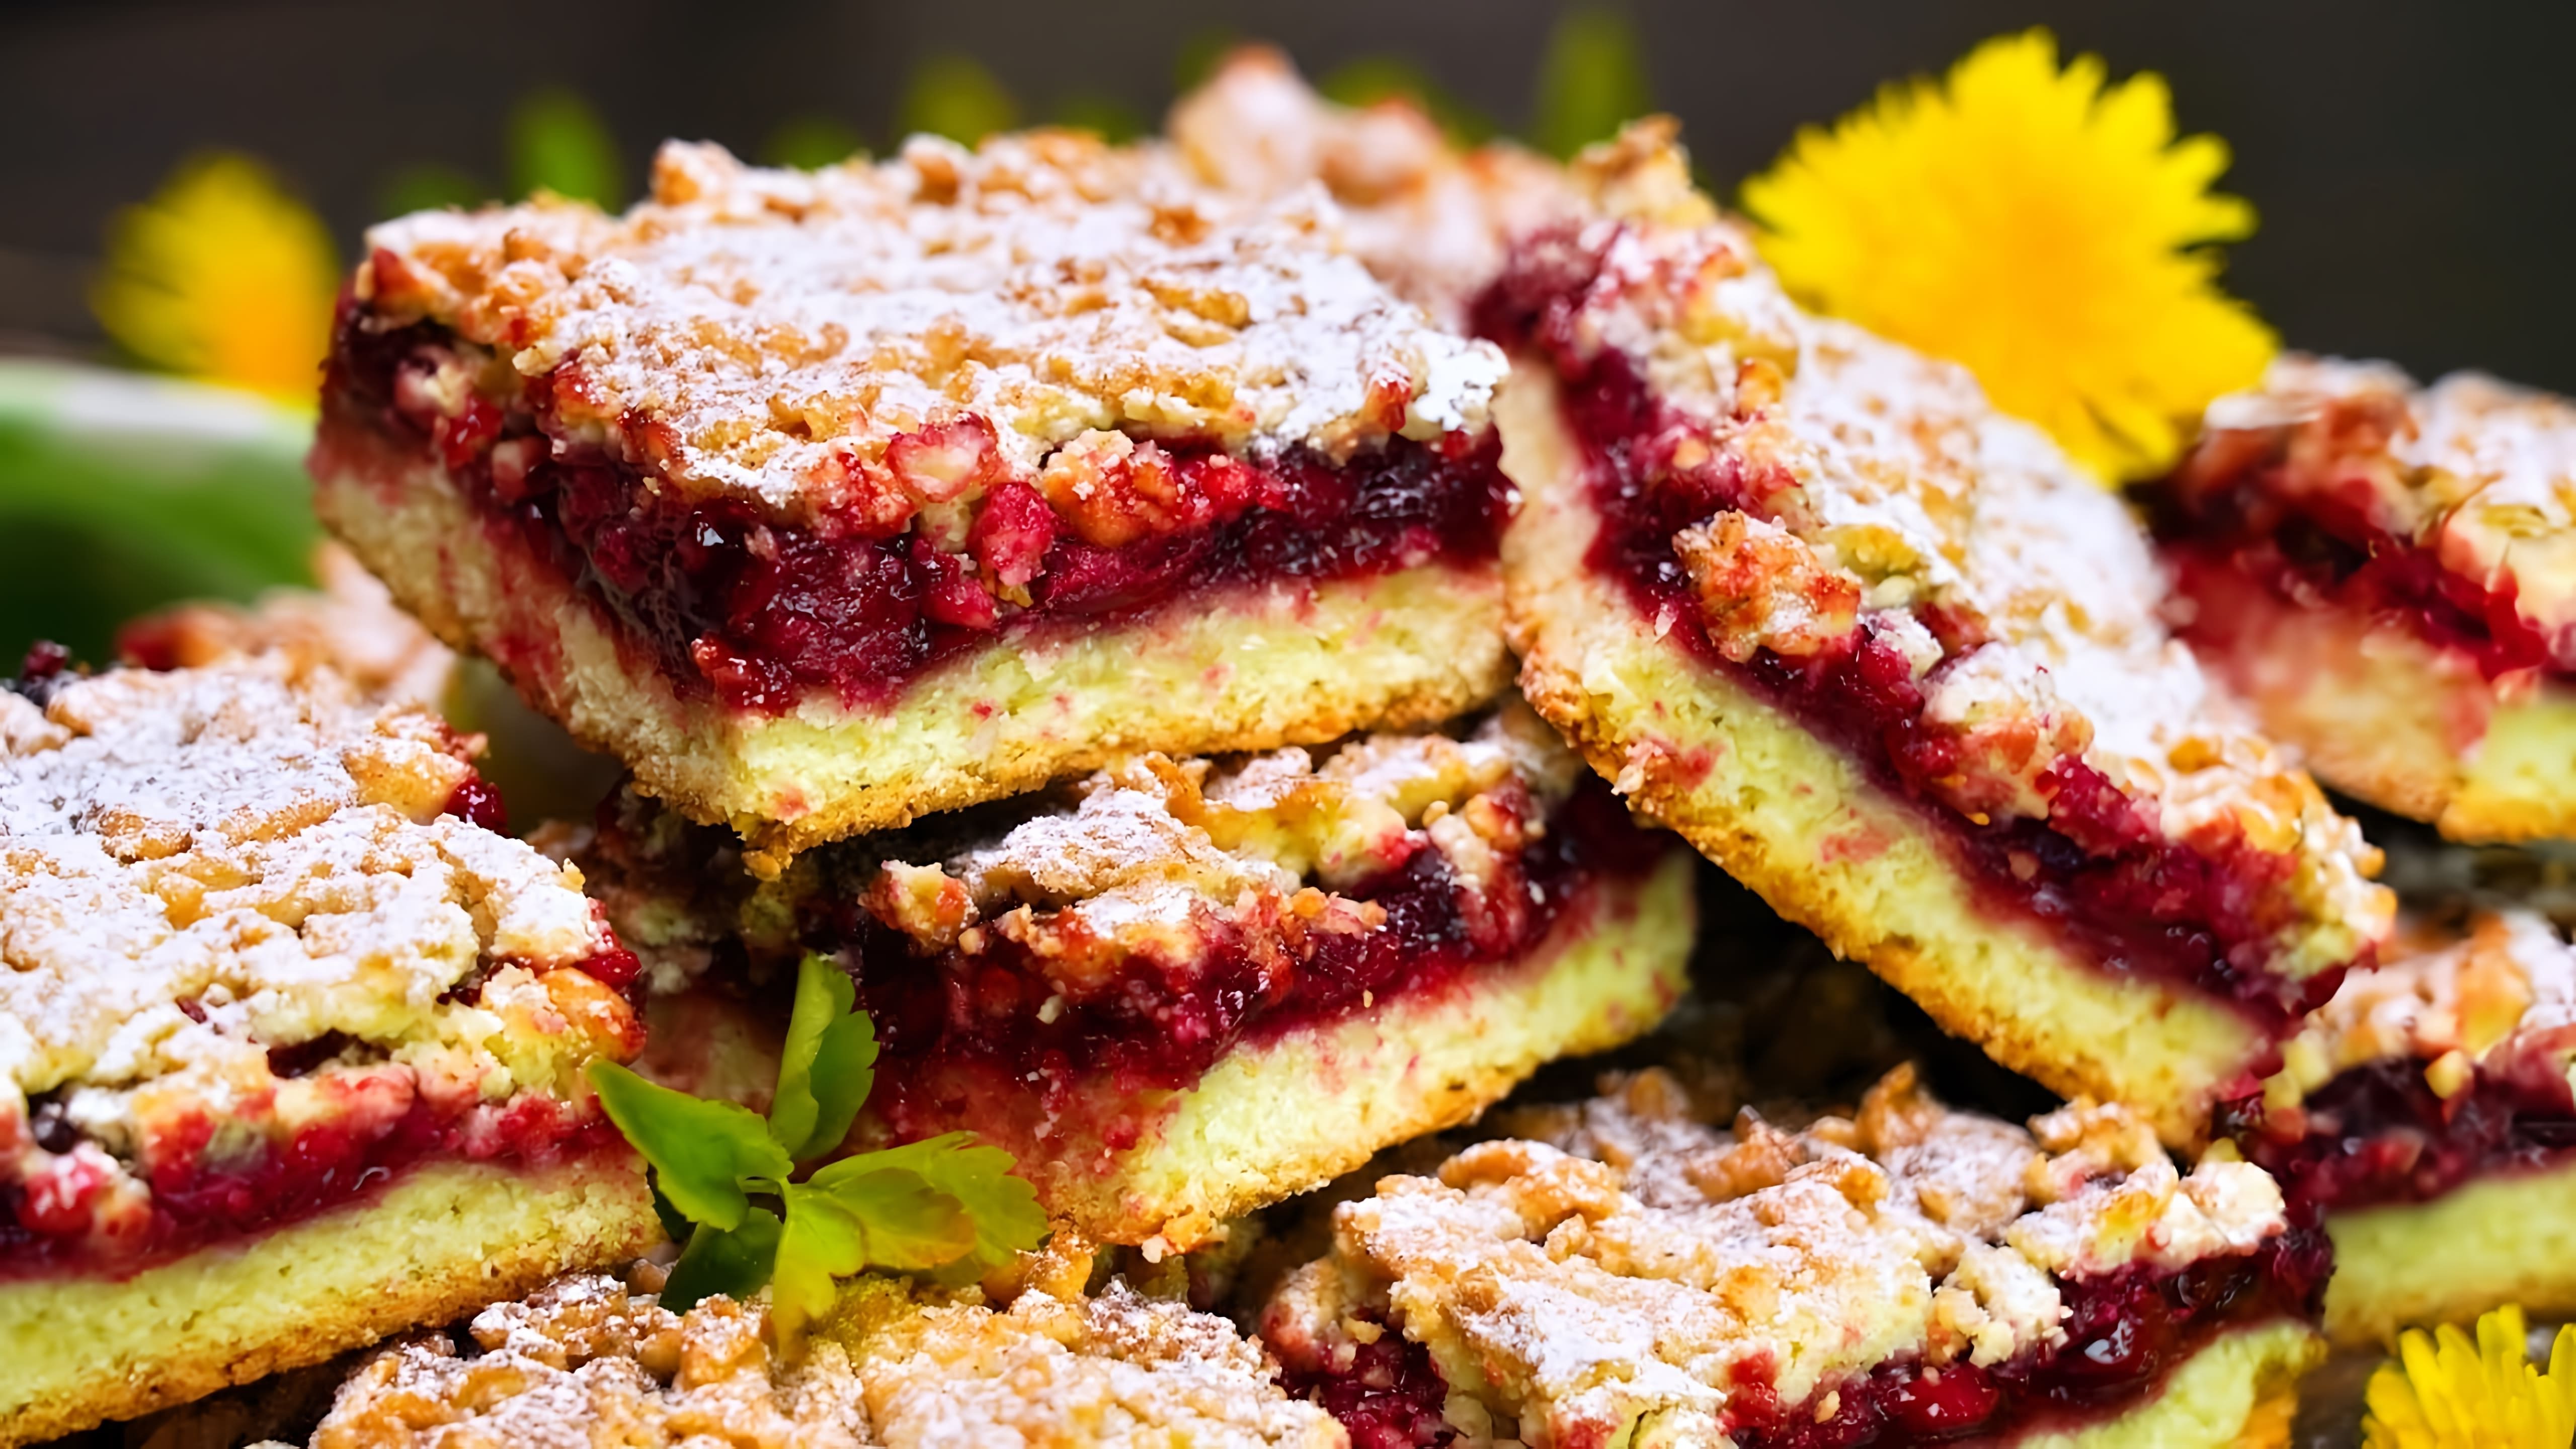 Видео рецепт быстрого и вкусного венского торта или пирога с ягодами вместо варенья для менее сладкой опции